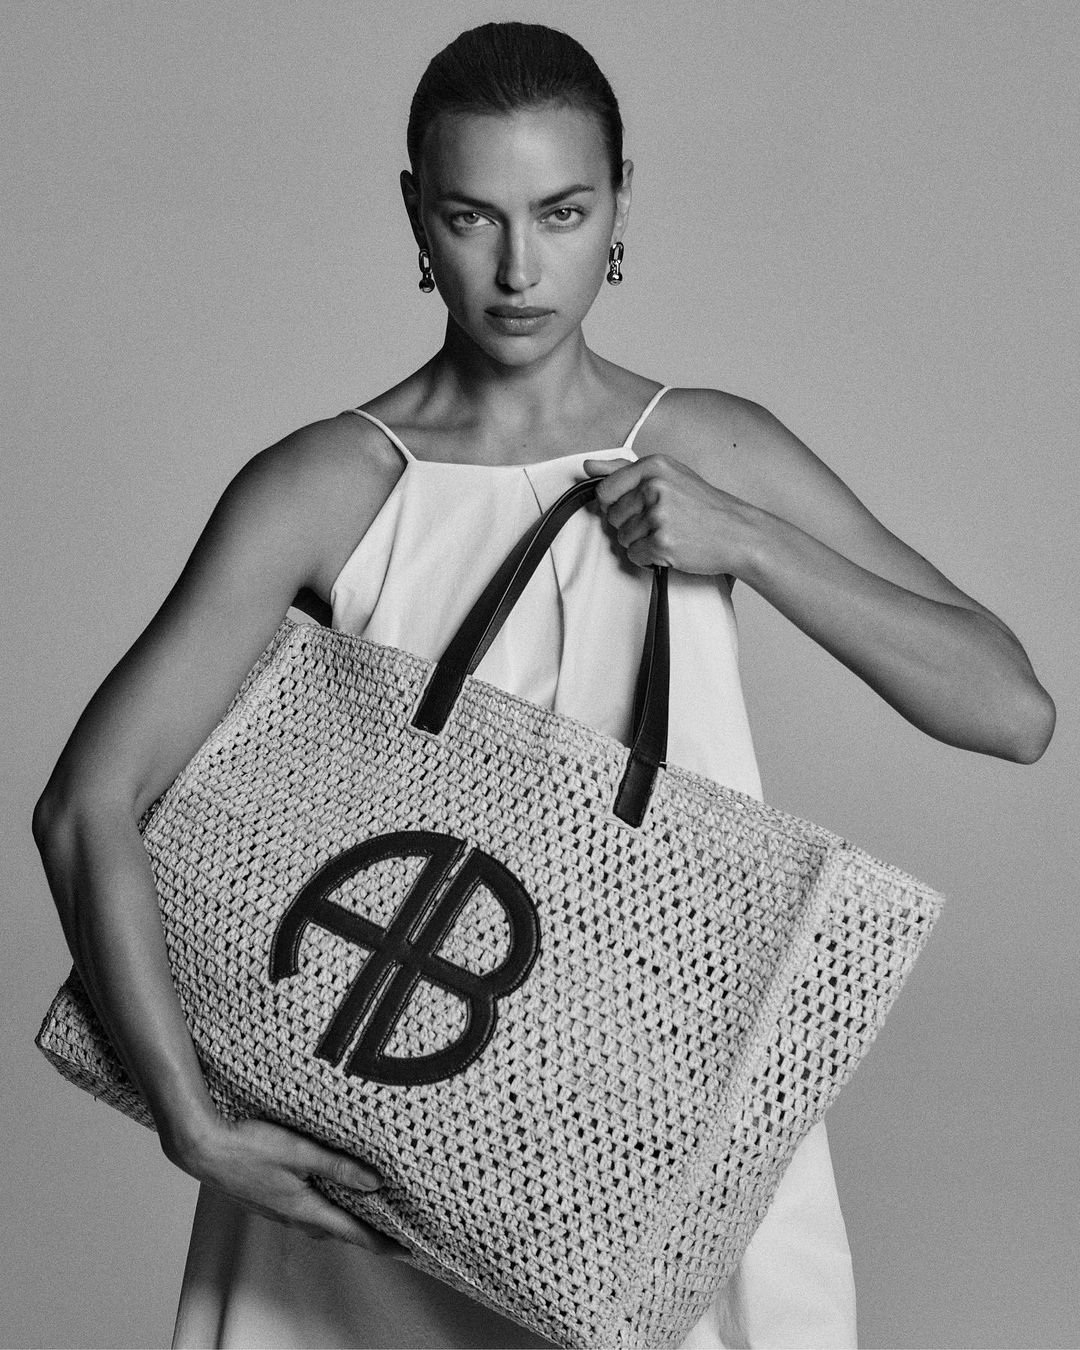 Summer Bags for Women - Bing - Shopping